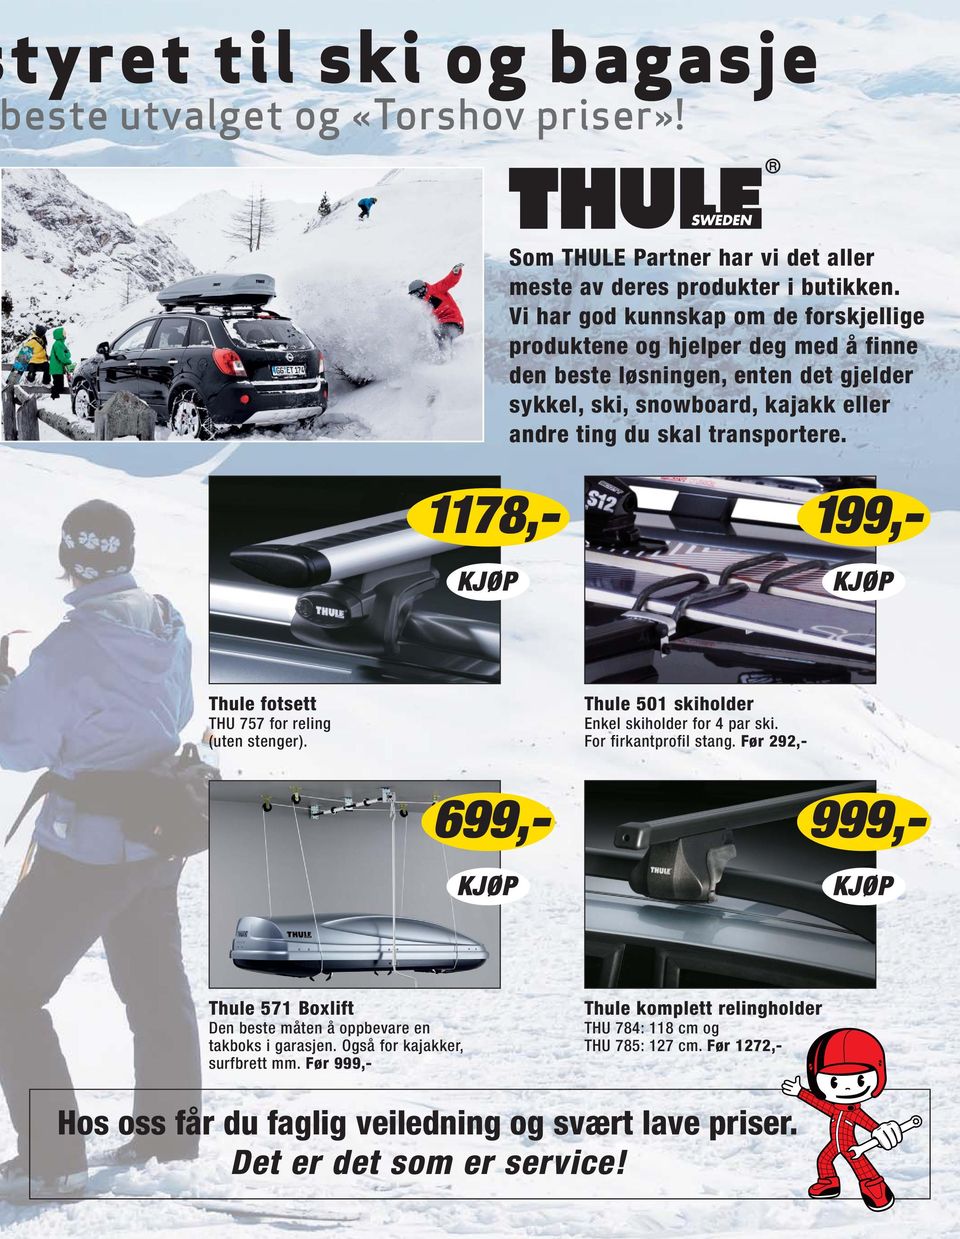 Thule fotsett THU 757 for reling (uten stenger). Thule 501 skiholder Enkel skiholder for 4 par ski. For firkantprofil stang.